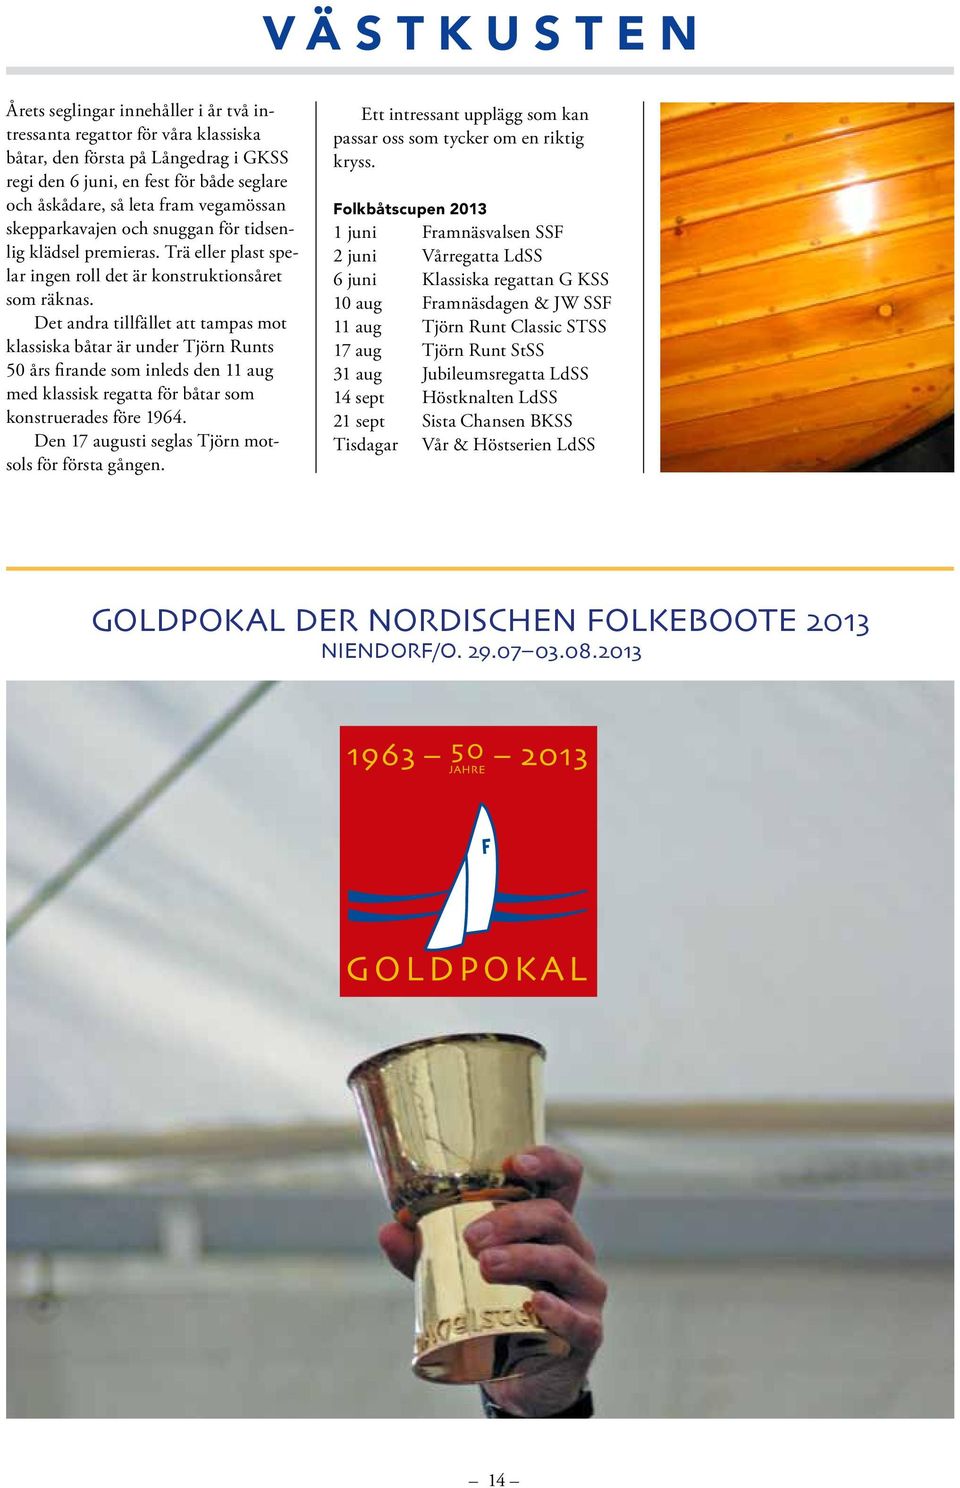 Det andra tillfället att tampas mot klassiska båtar är under Tjörn Runts 50 års firande som inleds den 11 aug med klassisk regatta för båtar som konstruerades före 1964.